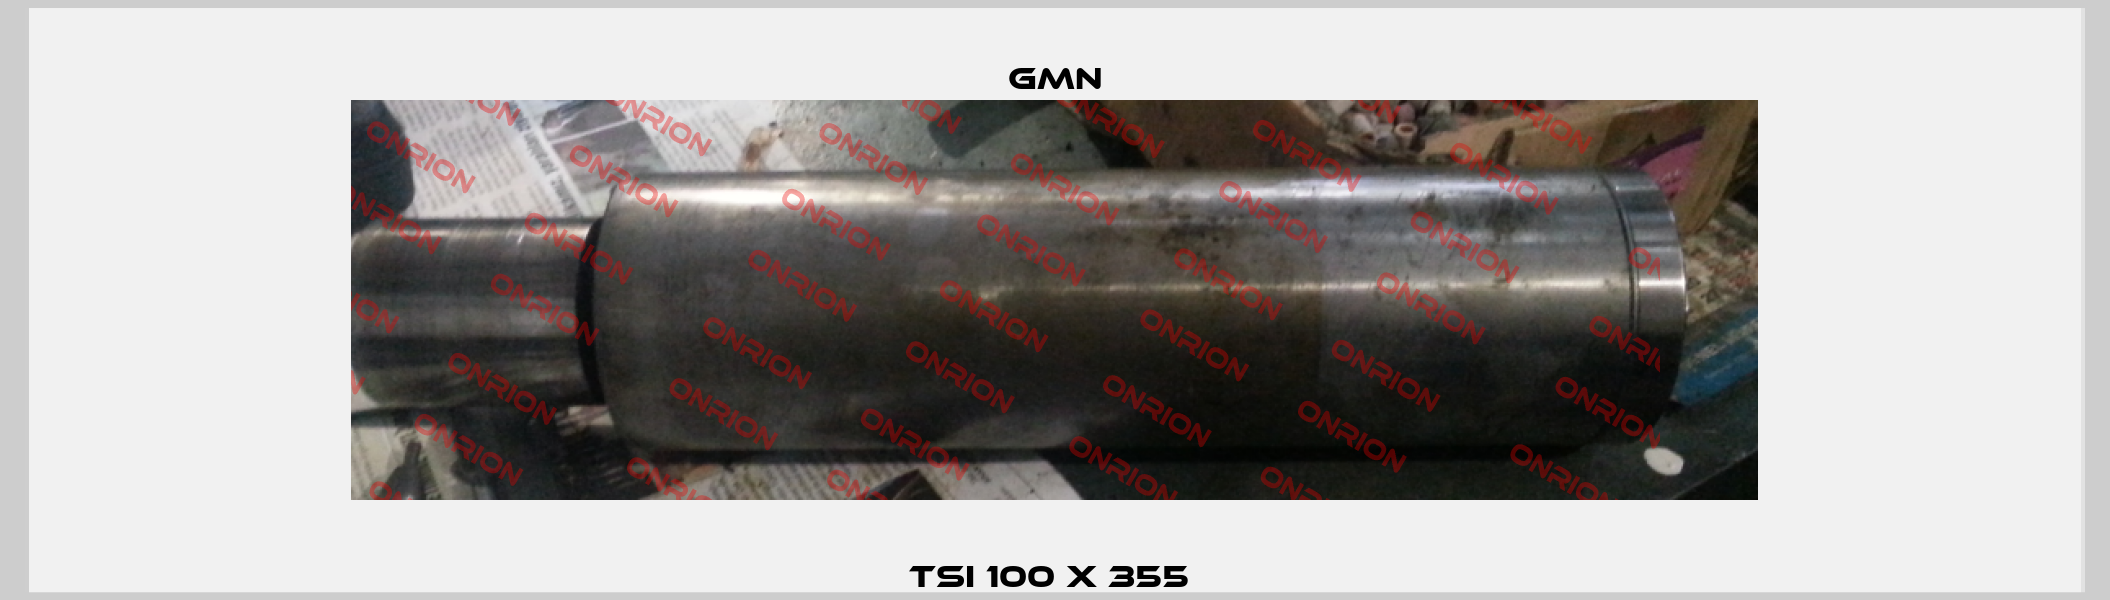 TSI 100 x 355  Gmn